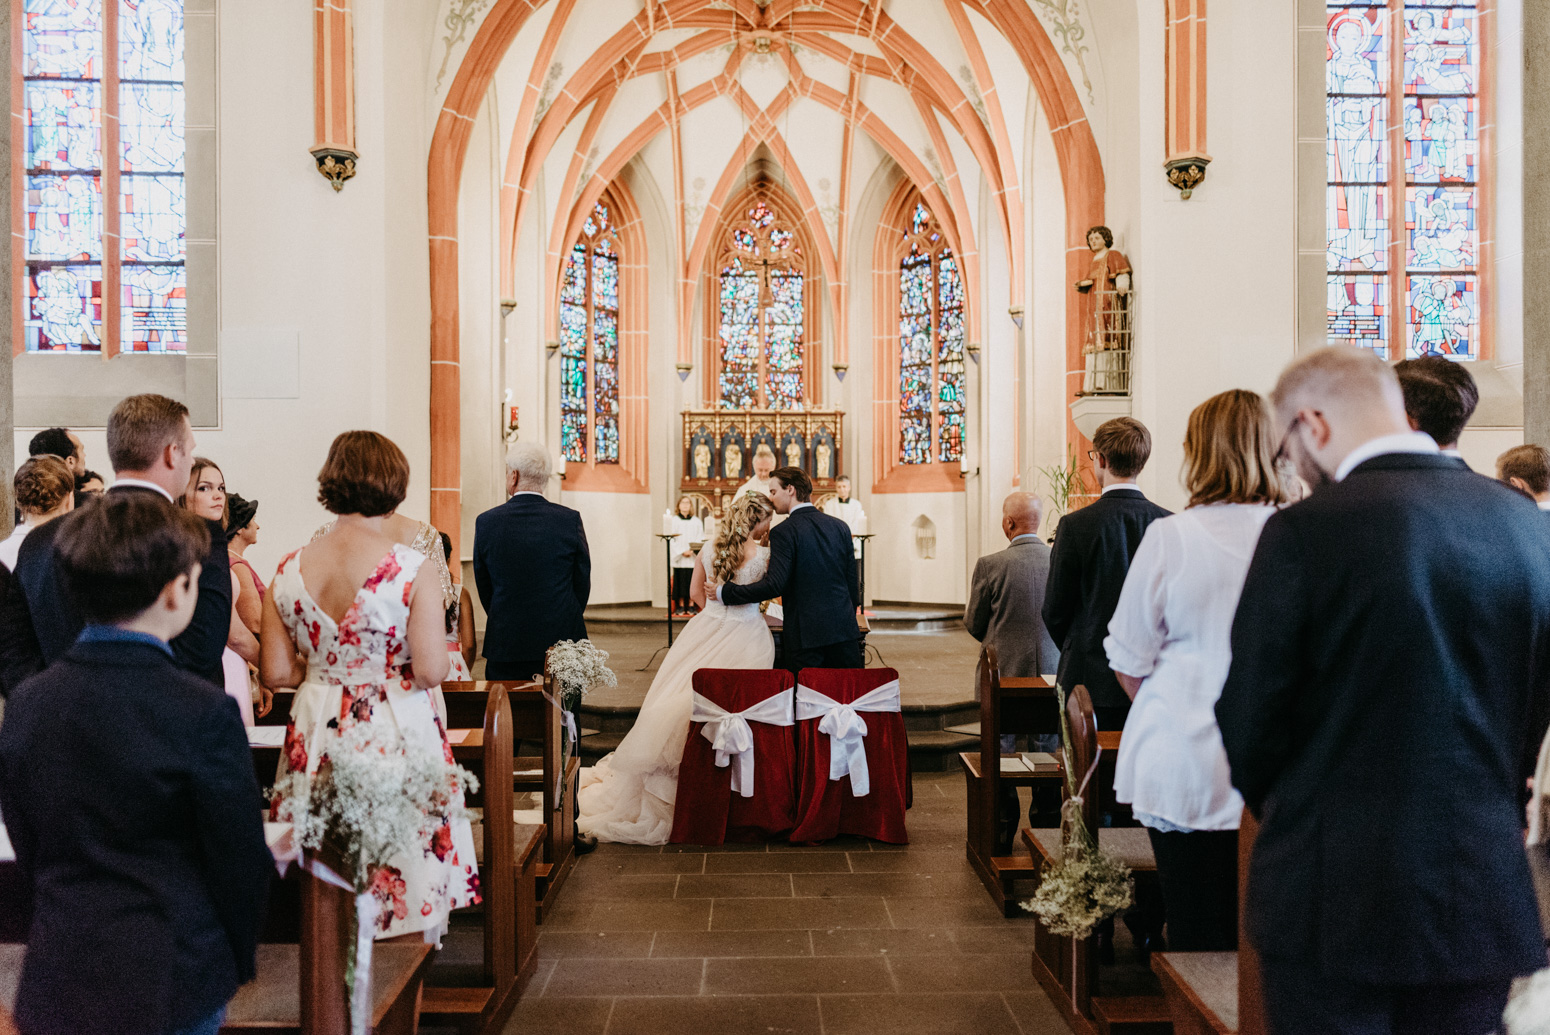 Trauung in der St. Laurentius Kirche in Oberwinter. Hochzeitsfotografin Daria Becker von Genuine Bonds aus Bonn